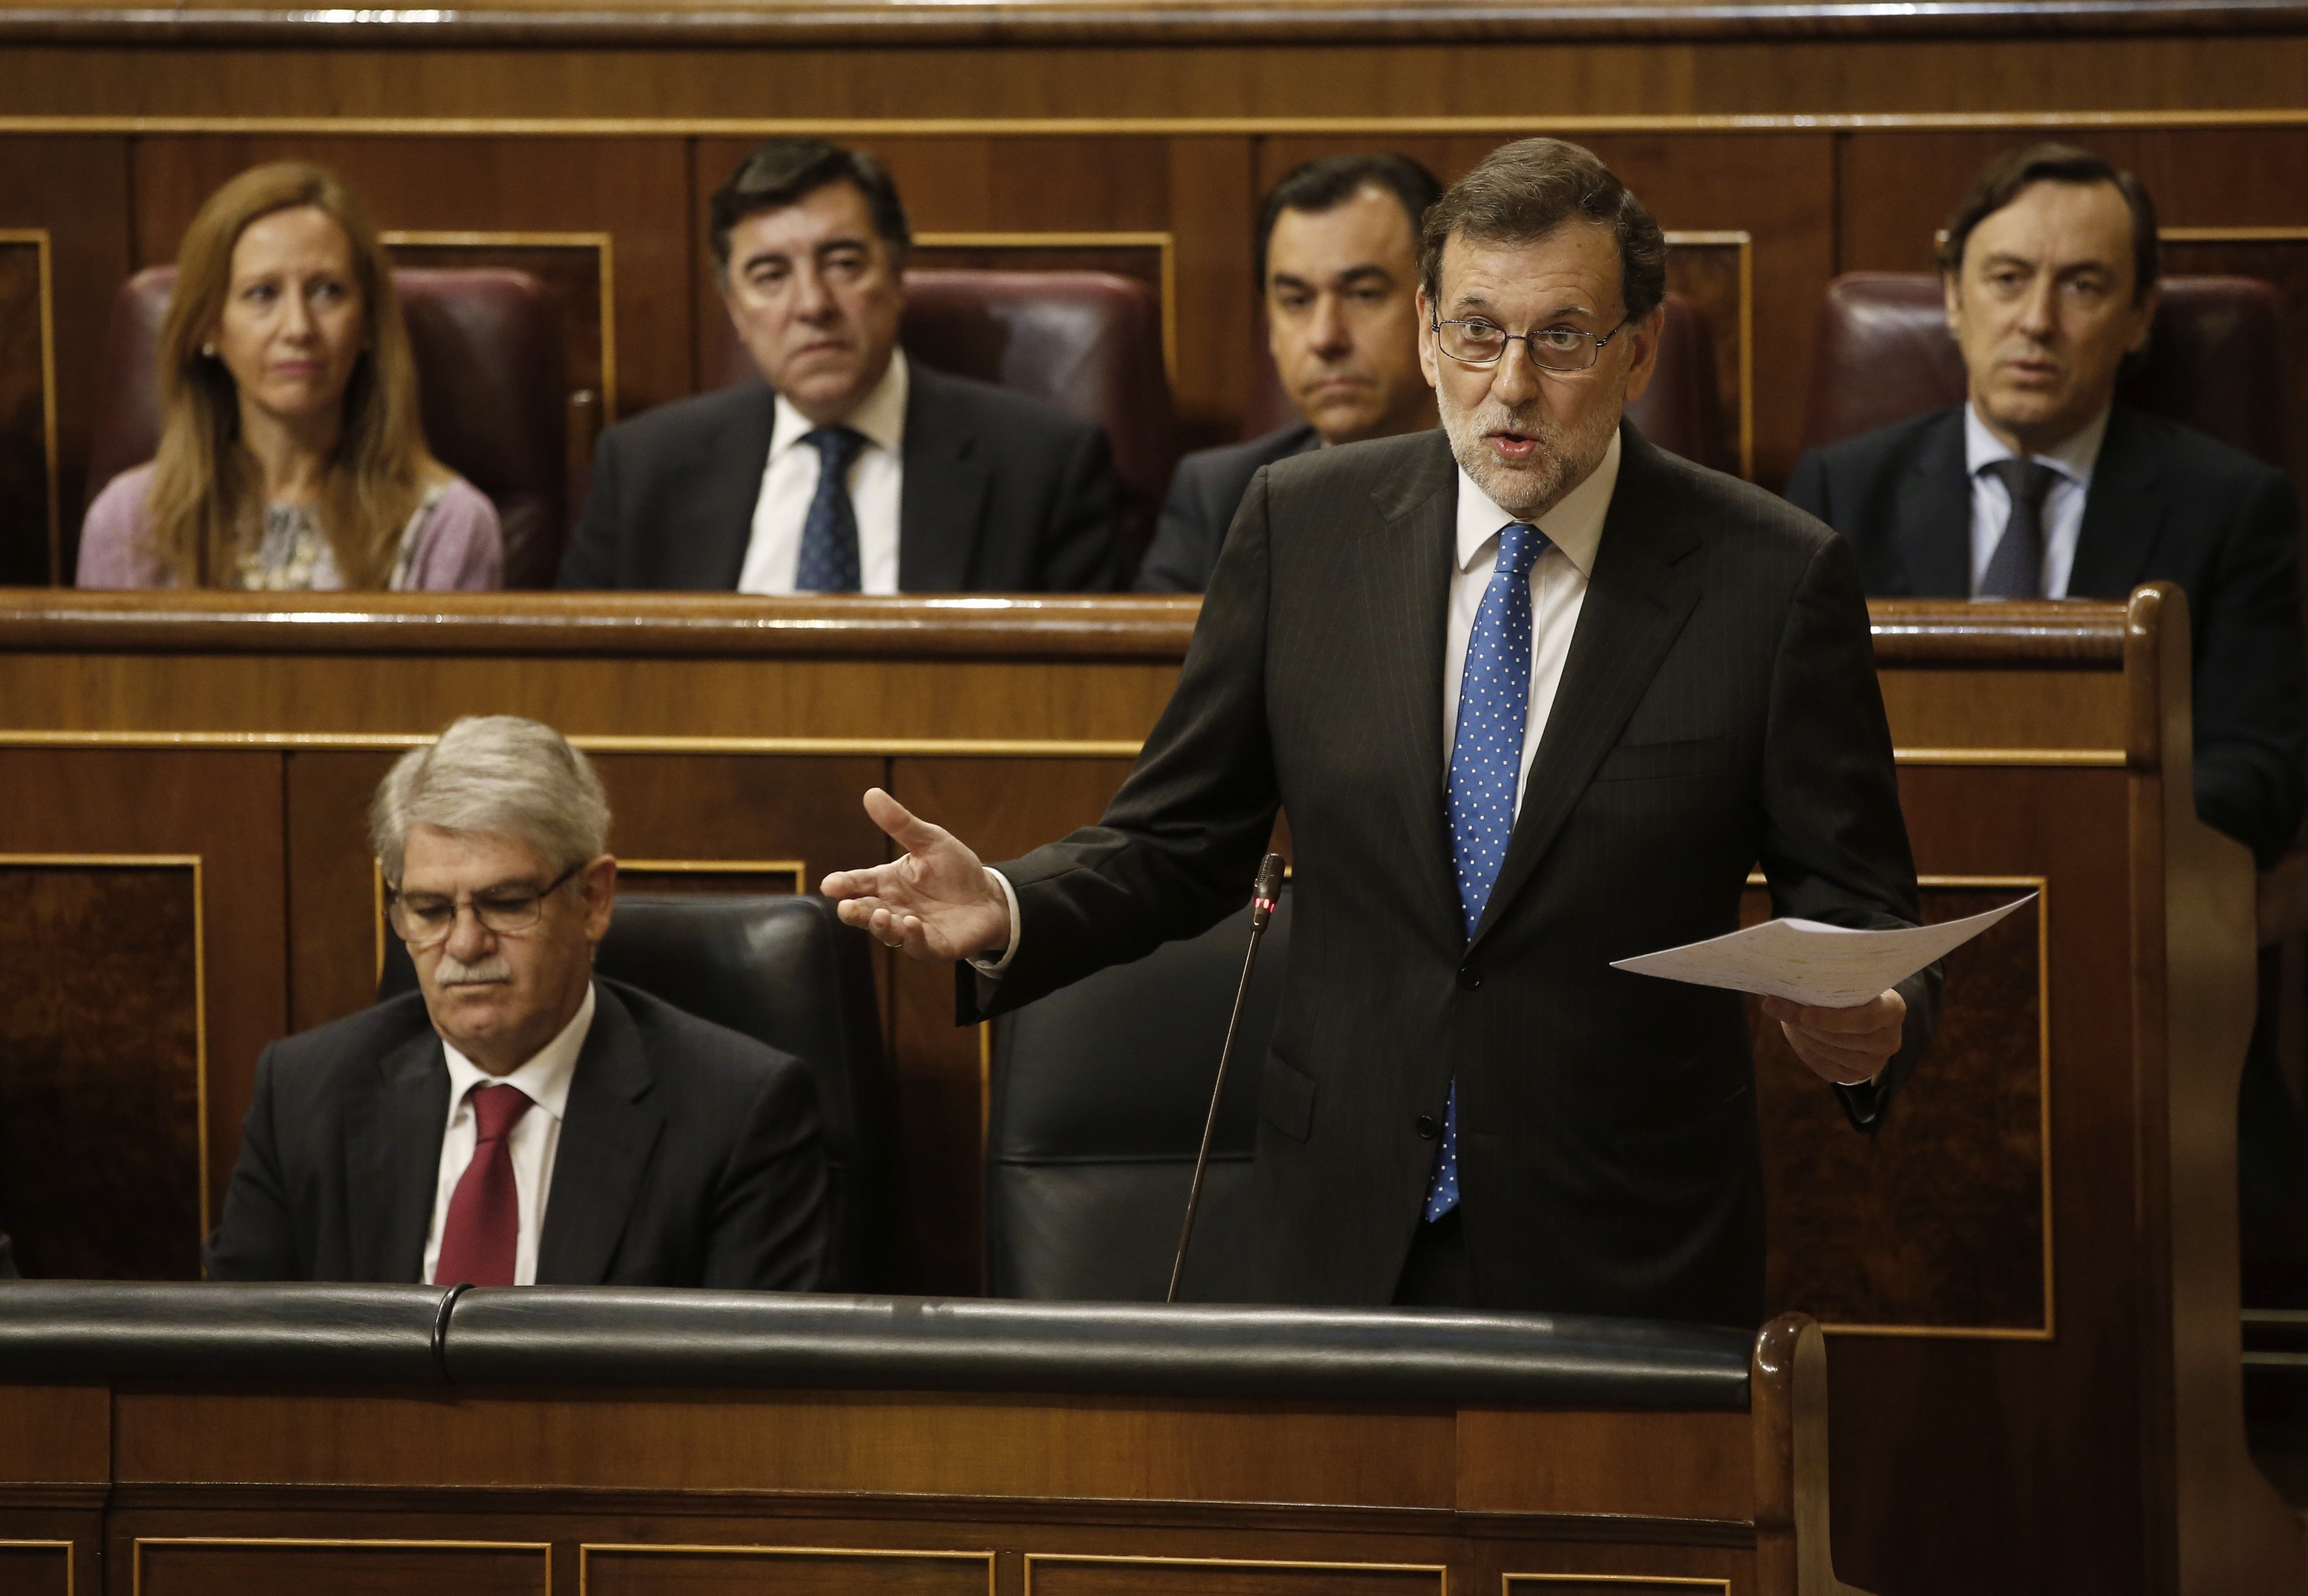 Rajoy veu "absolutament fals" que l'ex fiscal general fos rellevada per no obeir pressions